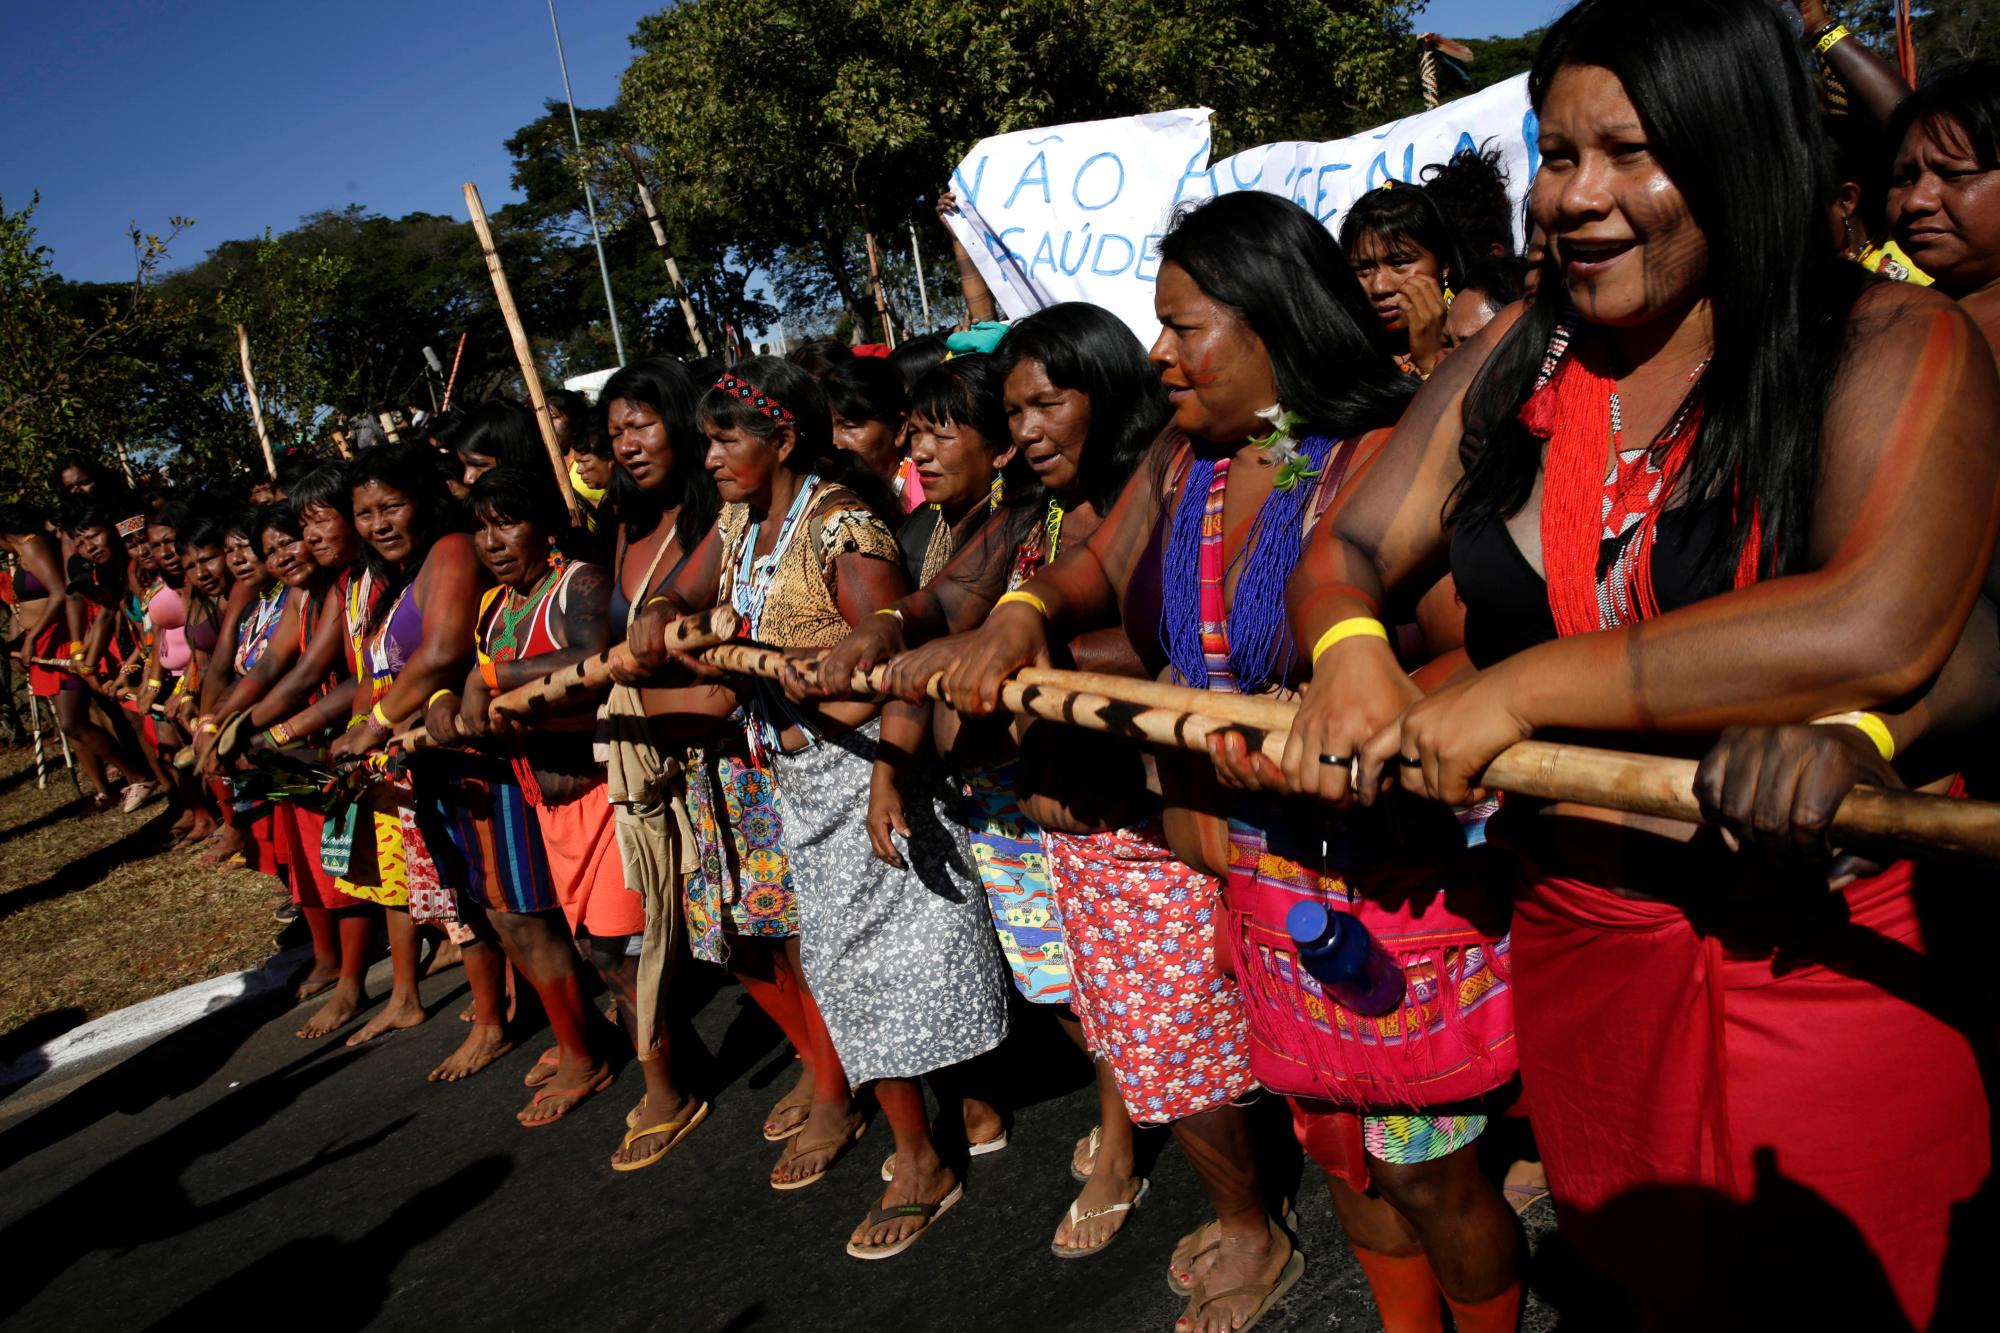 Las mujeres indígenas se unen en la Marcha de la Salud de las Mujeres Indígenas, en Brasilia, Brasil, el lunes 12 de agosto de 2019. Las mujeres indígenas con atuendos tradicionales y caras pintadas participan en un campamento de varios días en Brasilia con el objetivo de resaltar los problemas de los derechos indígenas.